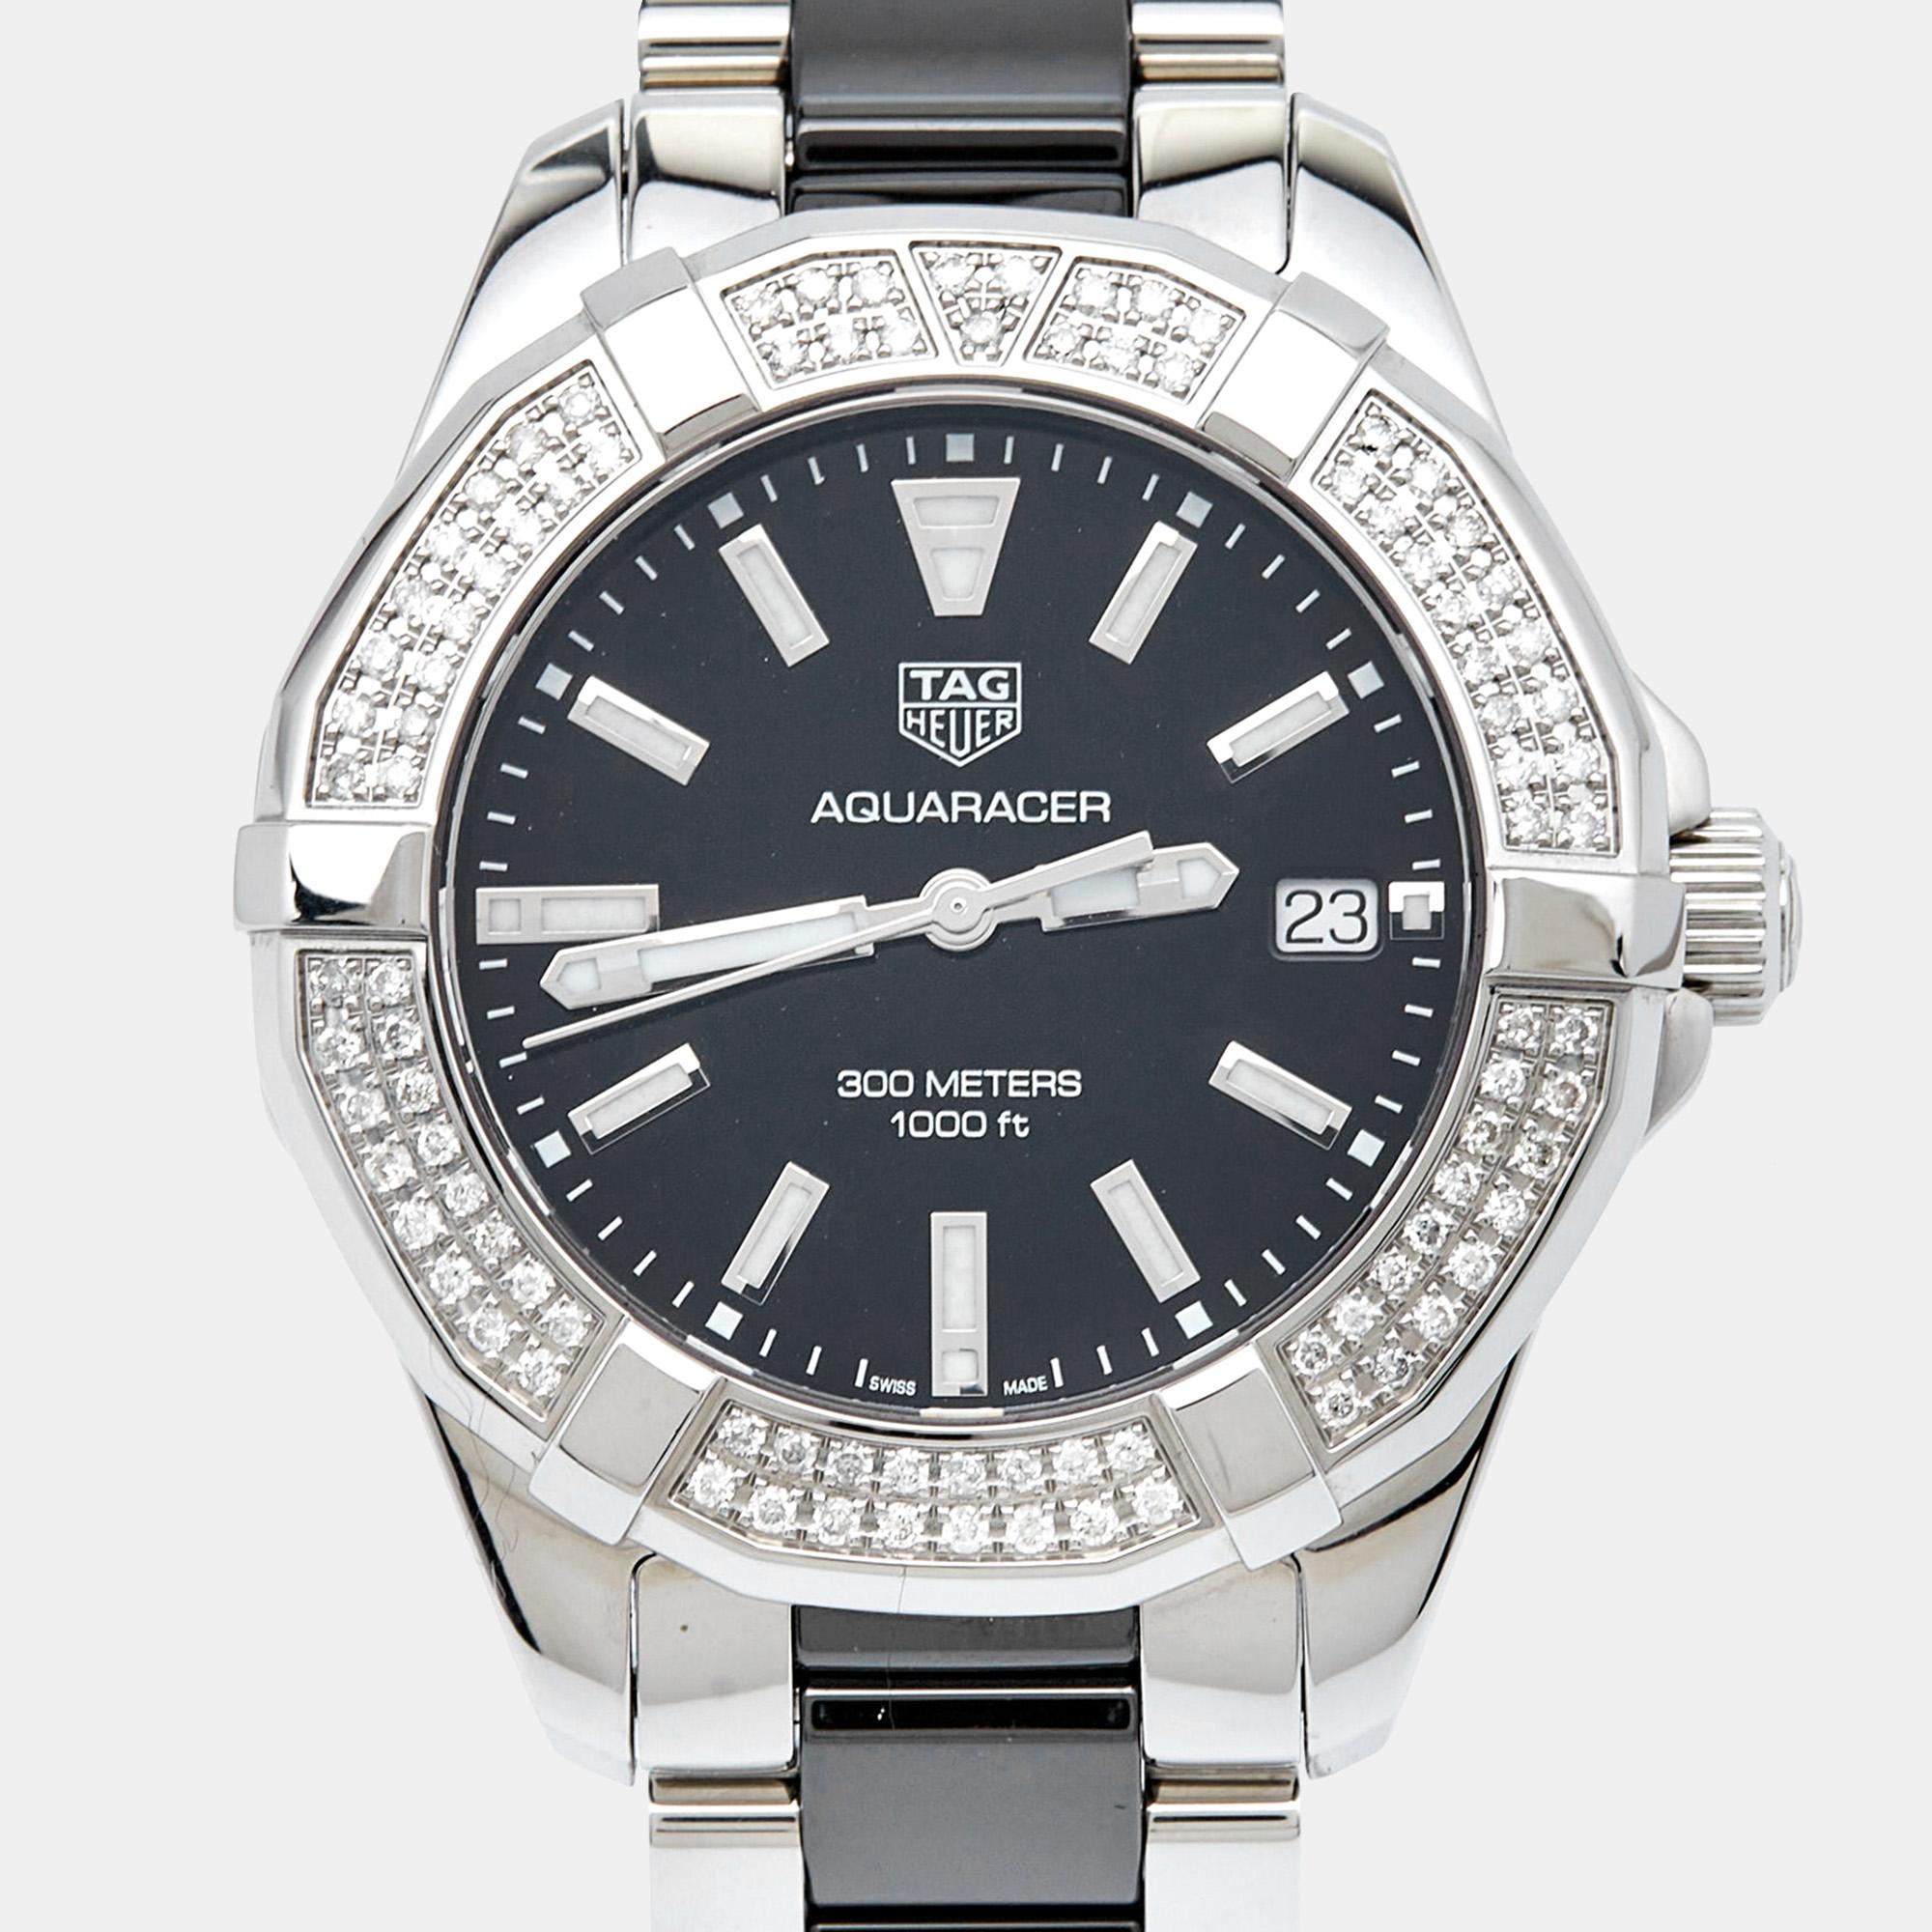 Incorporez le style sophistiqué de TAG Heuer à votre ensemble avec cette exquise montre-bracelet Aquaracer. Elle témoigne de l'attachement de la marque à la créativité et de son expertise dans l'art de l'horlogerie.

Comprend
Boîte d'origine, étui